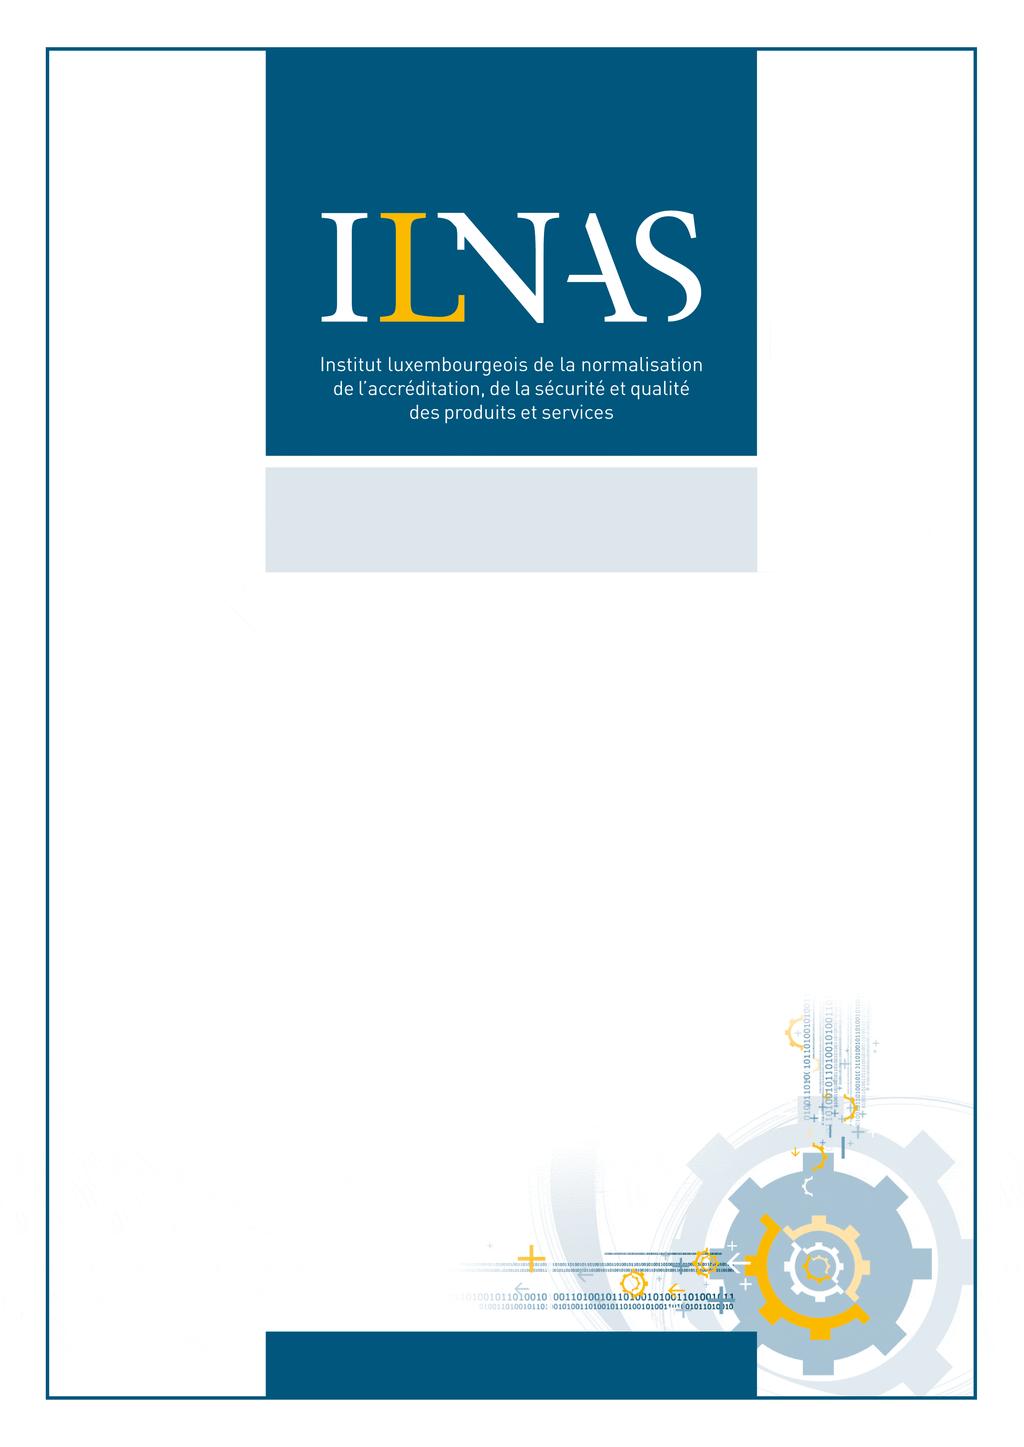 ILNAS-EN 61882:2016 Hazard and operability studies (HAZOP studies) - Application guide Études de danger et